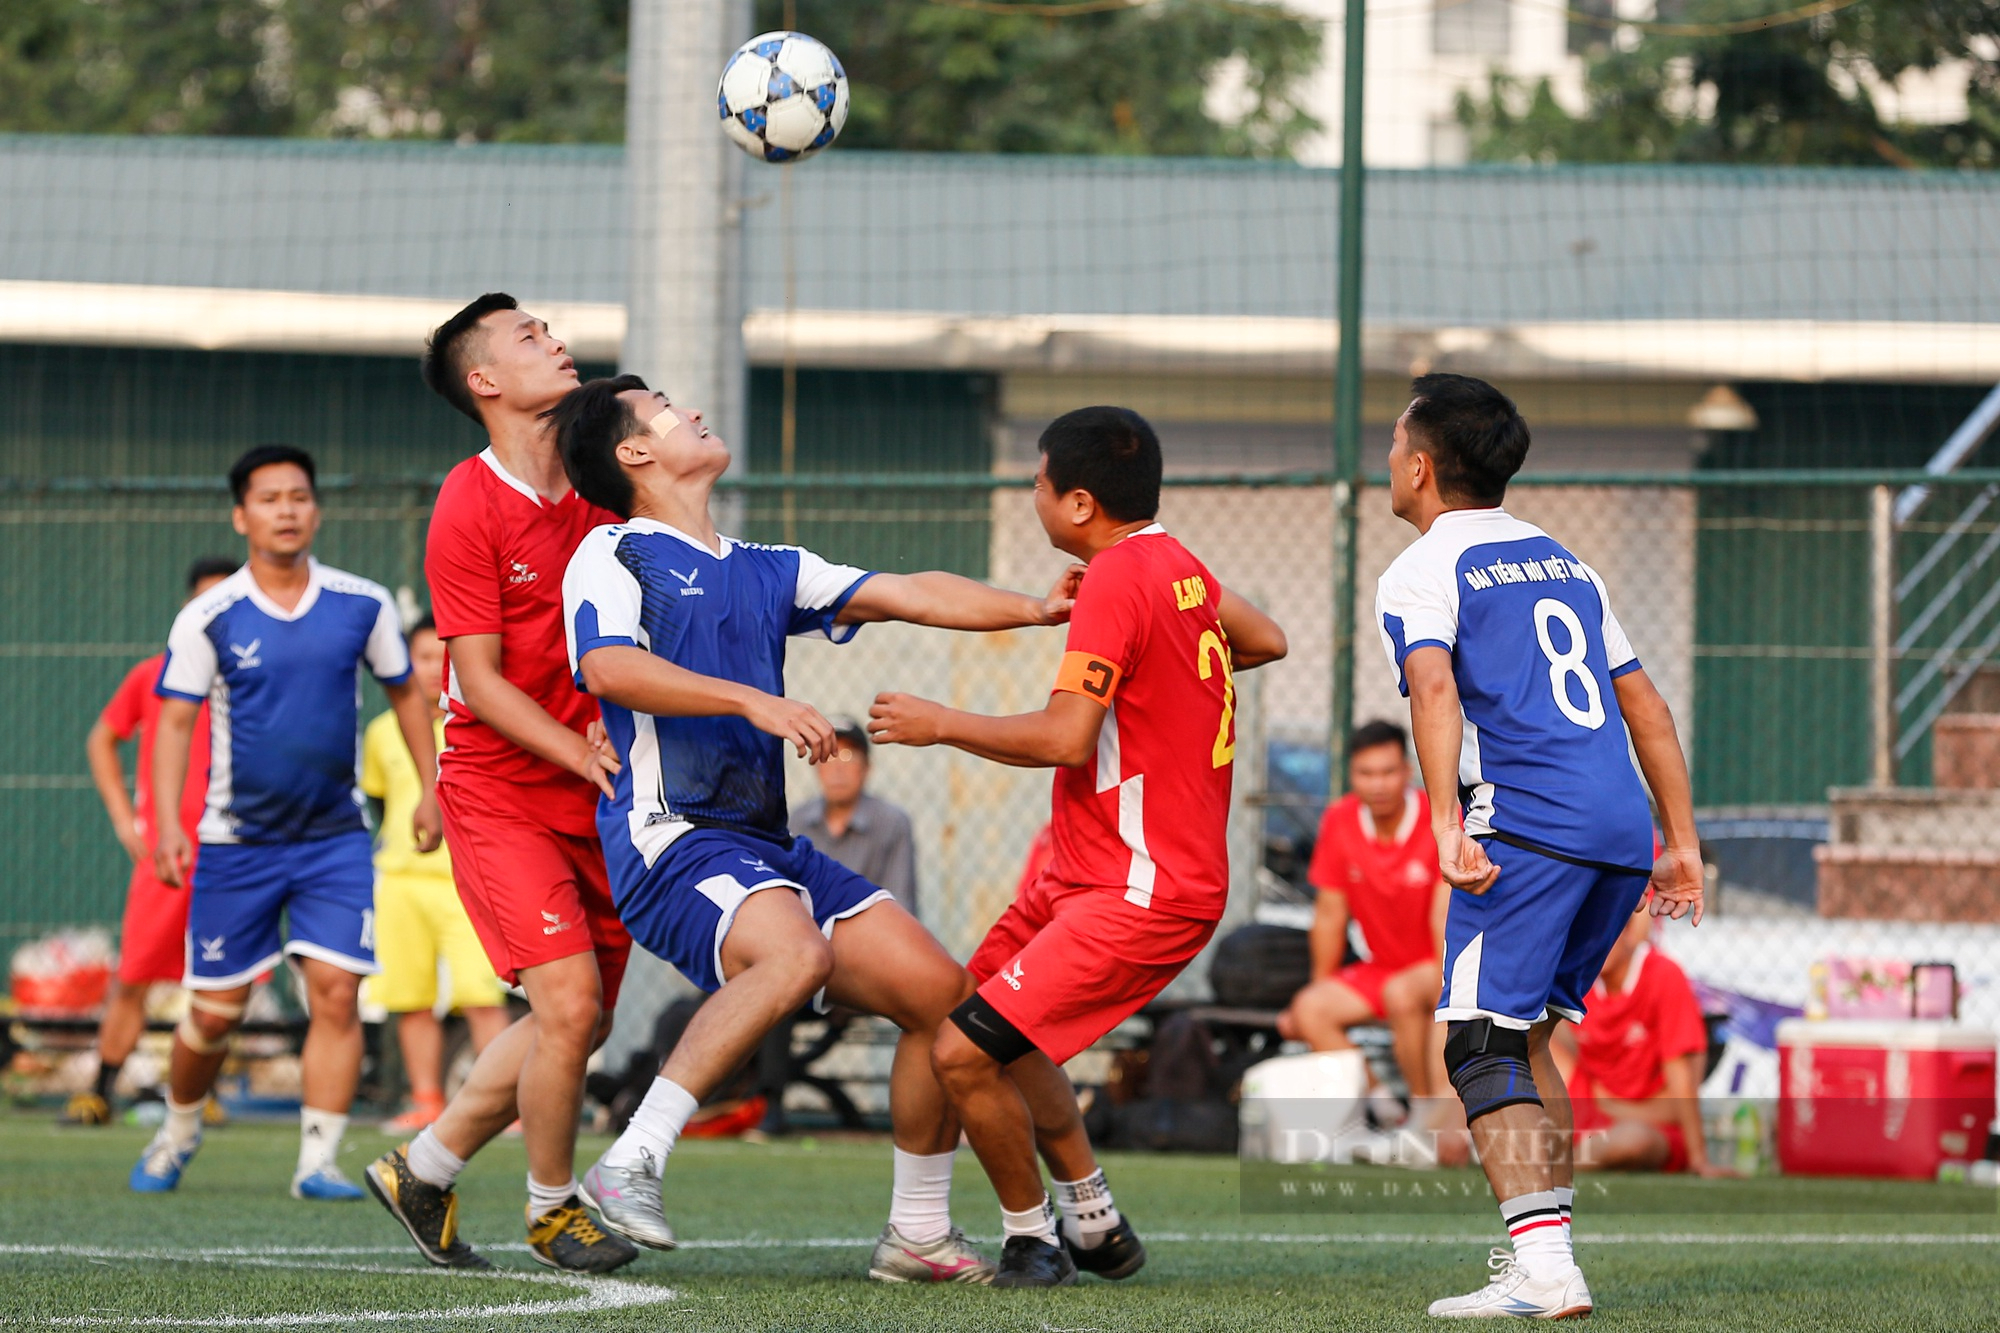 Đội bóng VOV chính thức lên ngôi vô địch sau chiến thắng nghẹt thở trước báo Lao Động - Ảnh 7.